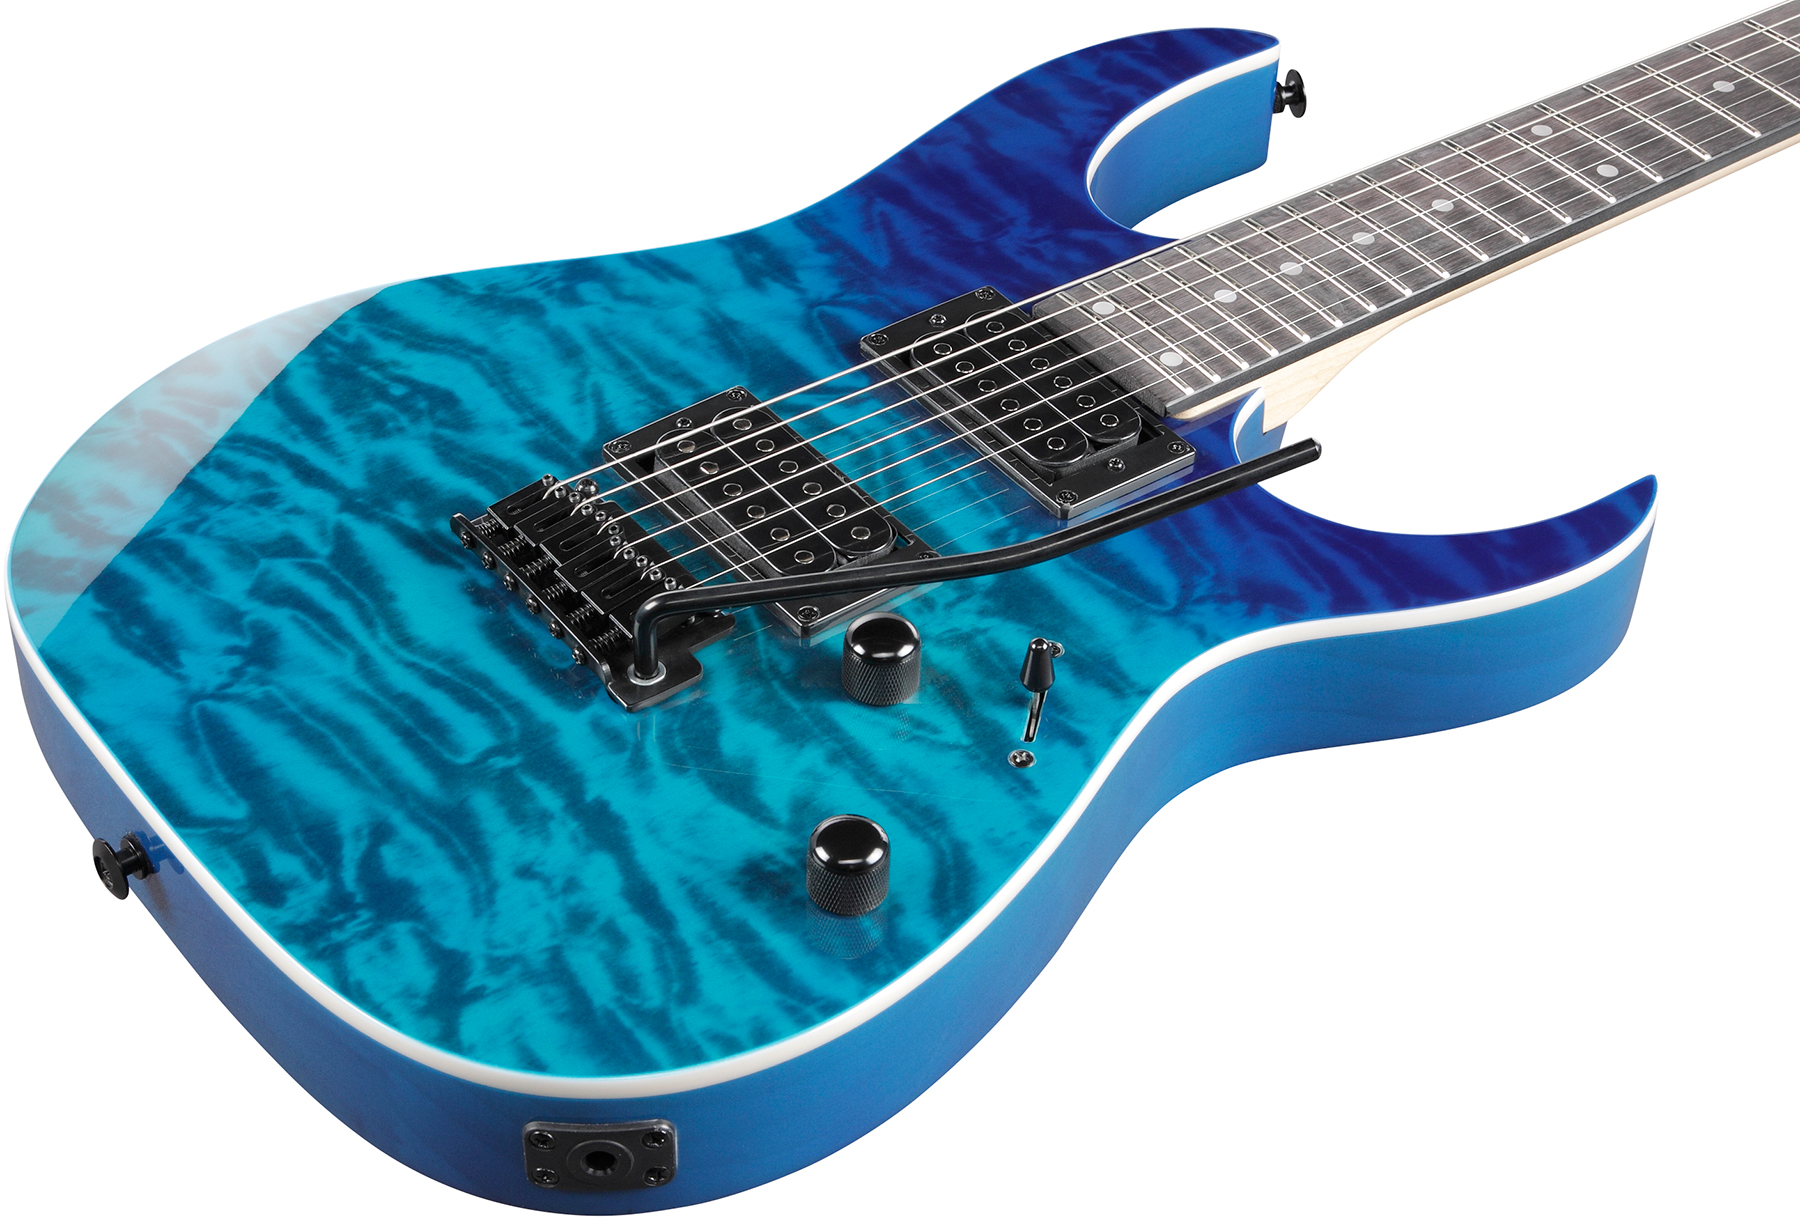 Ibanez Grg120qasp Bgd Gio 2h Trem Pur - Blue Gradation - Metalen elektrische gitaar - Variation 2